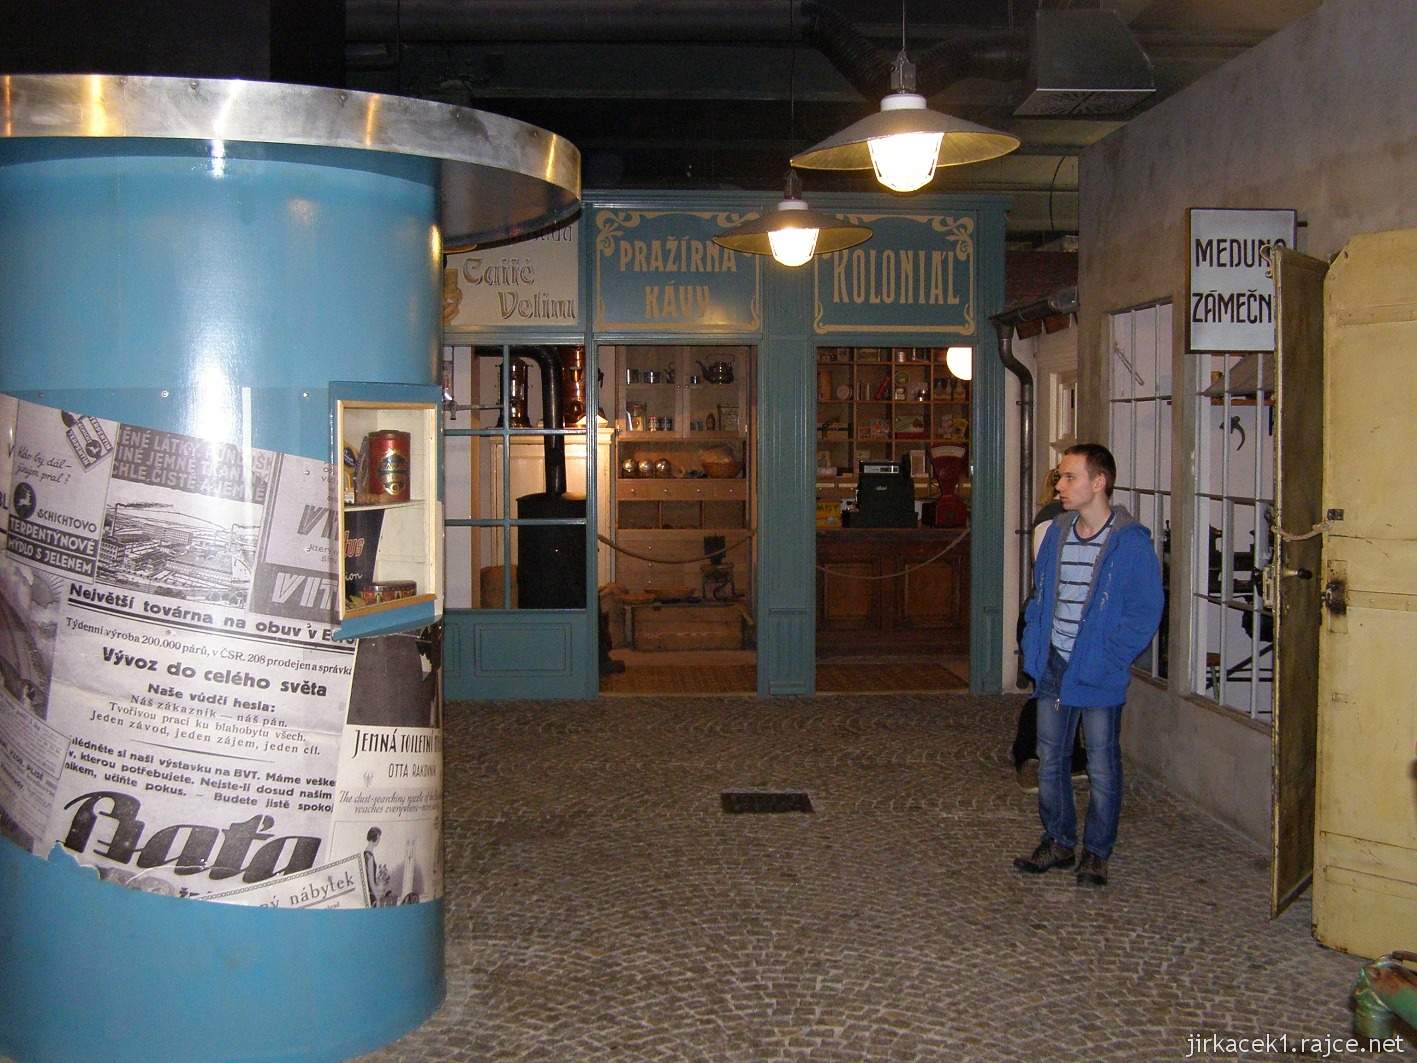 Brno - Technické muzeum 54 - ulička řemesel - koloniál s pražírnou kávy